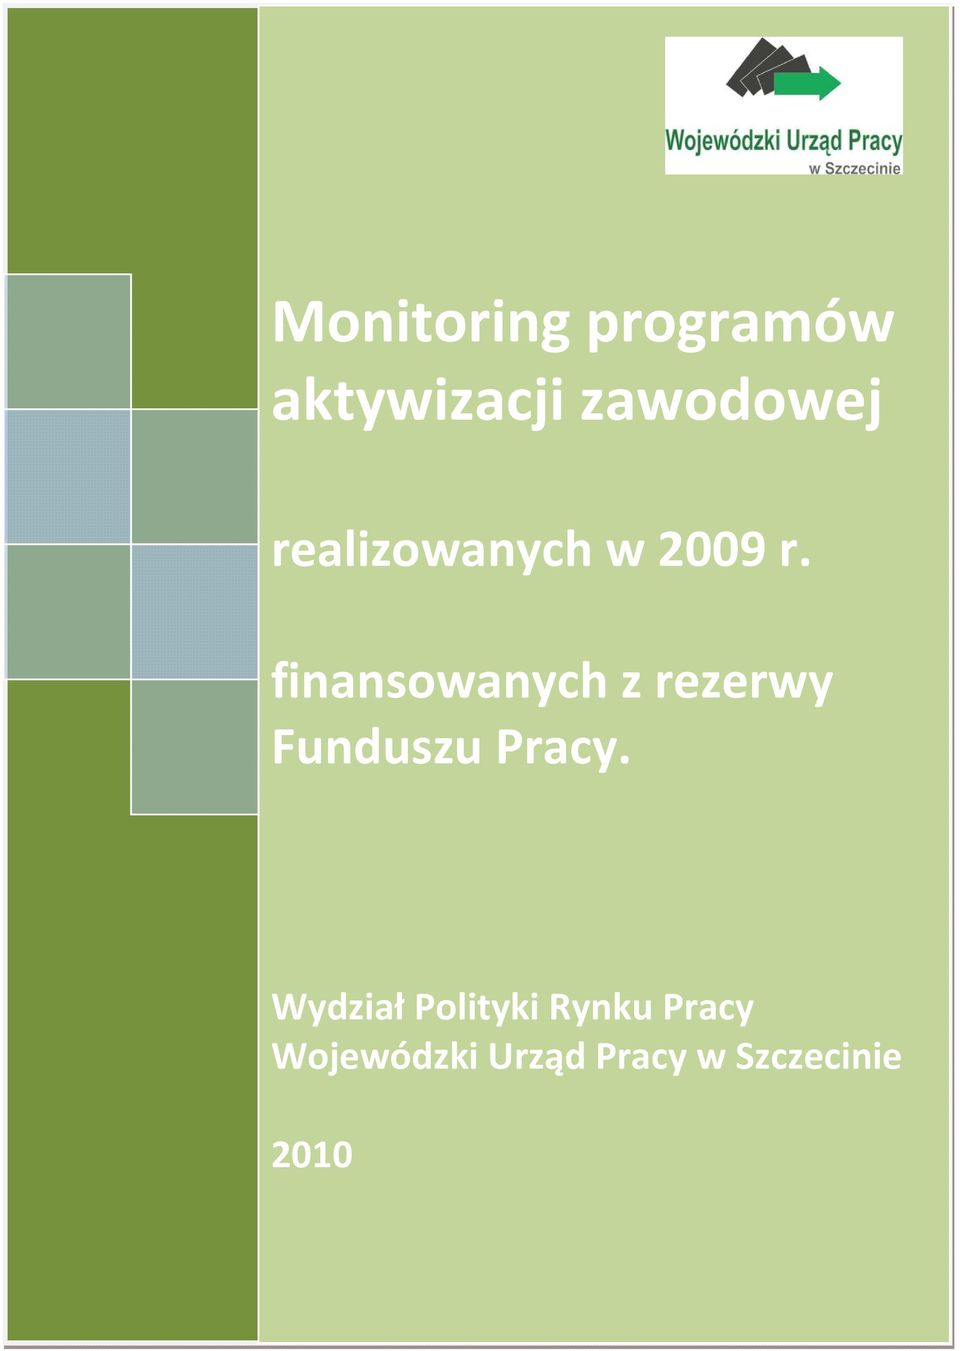 Wydział Polityki Rynku Pracy Wojewódzki Urząd Pracy w Szczecinie